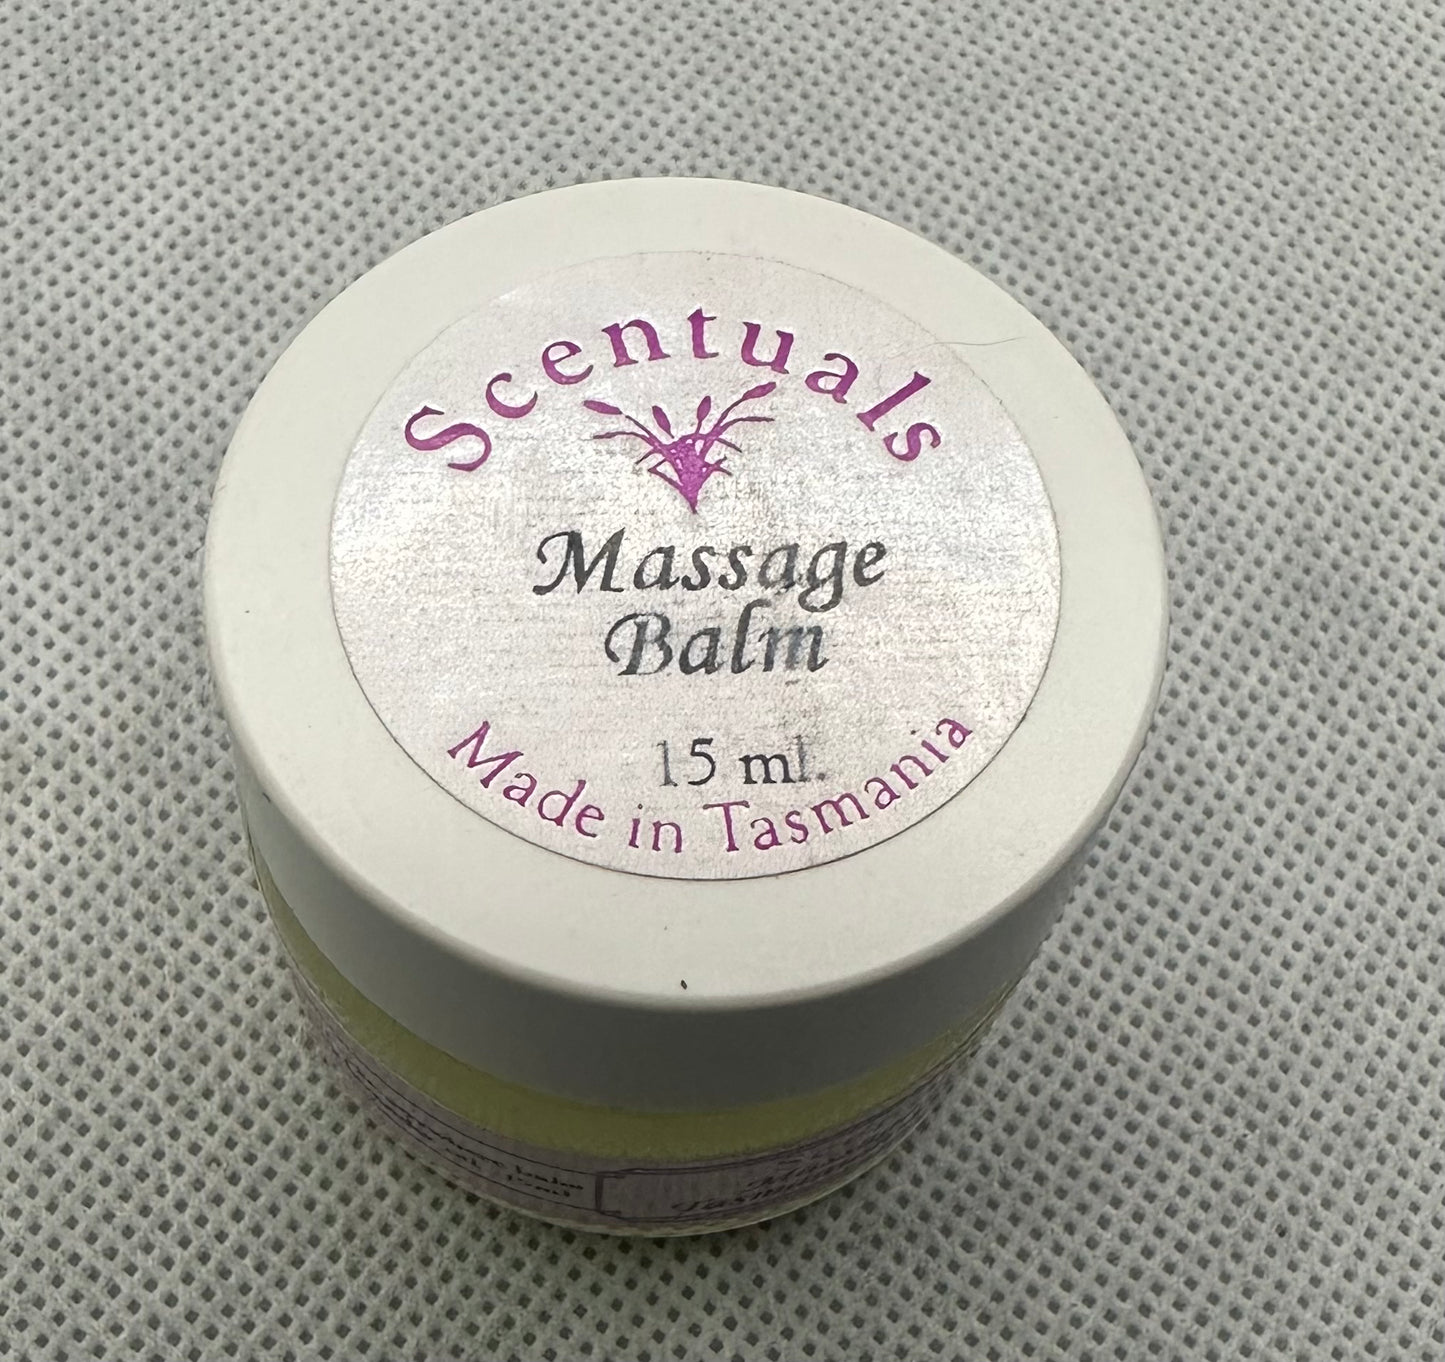 Scentuals Massage Balm